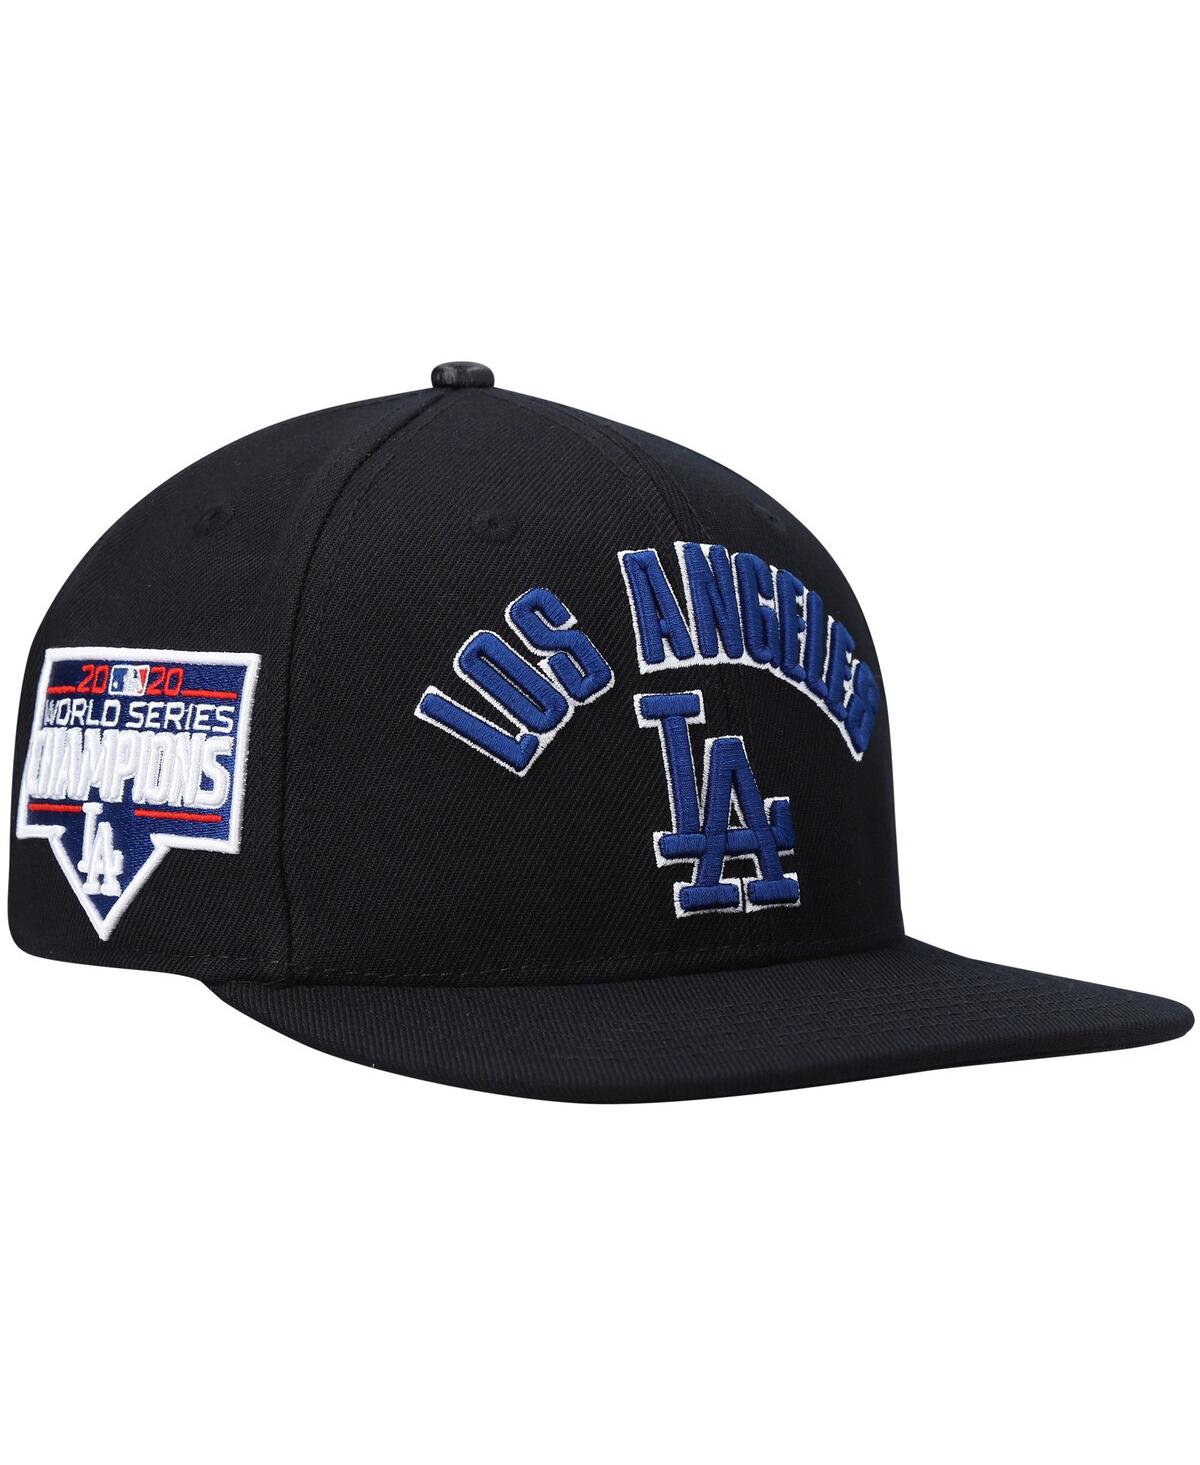 Shop Pro Standard Men's  Black Los Angeles Dodgers Stacked Logo Snapback Hat